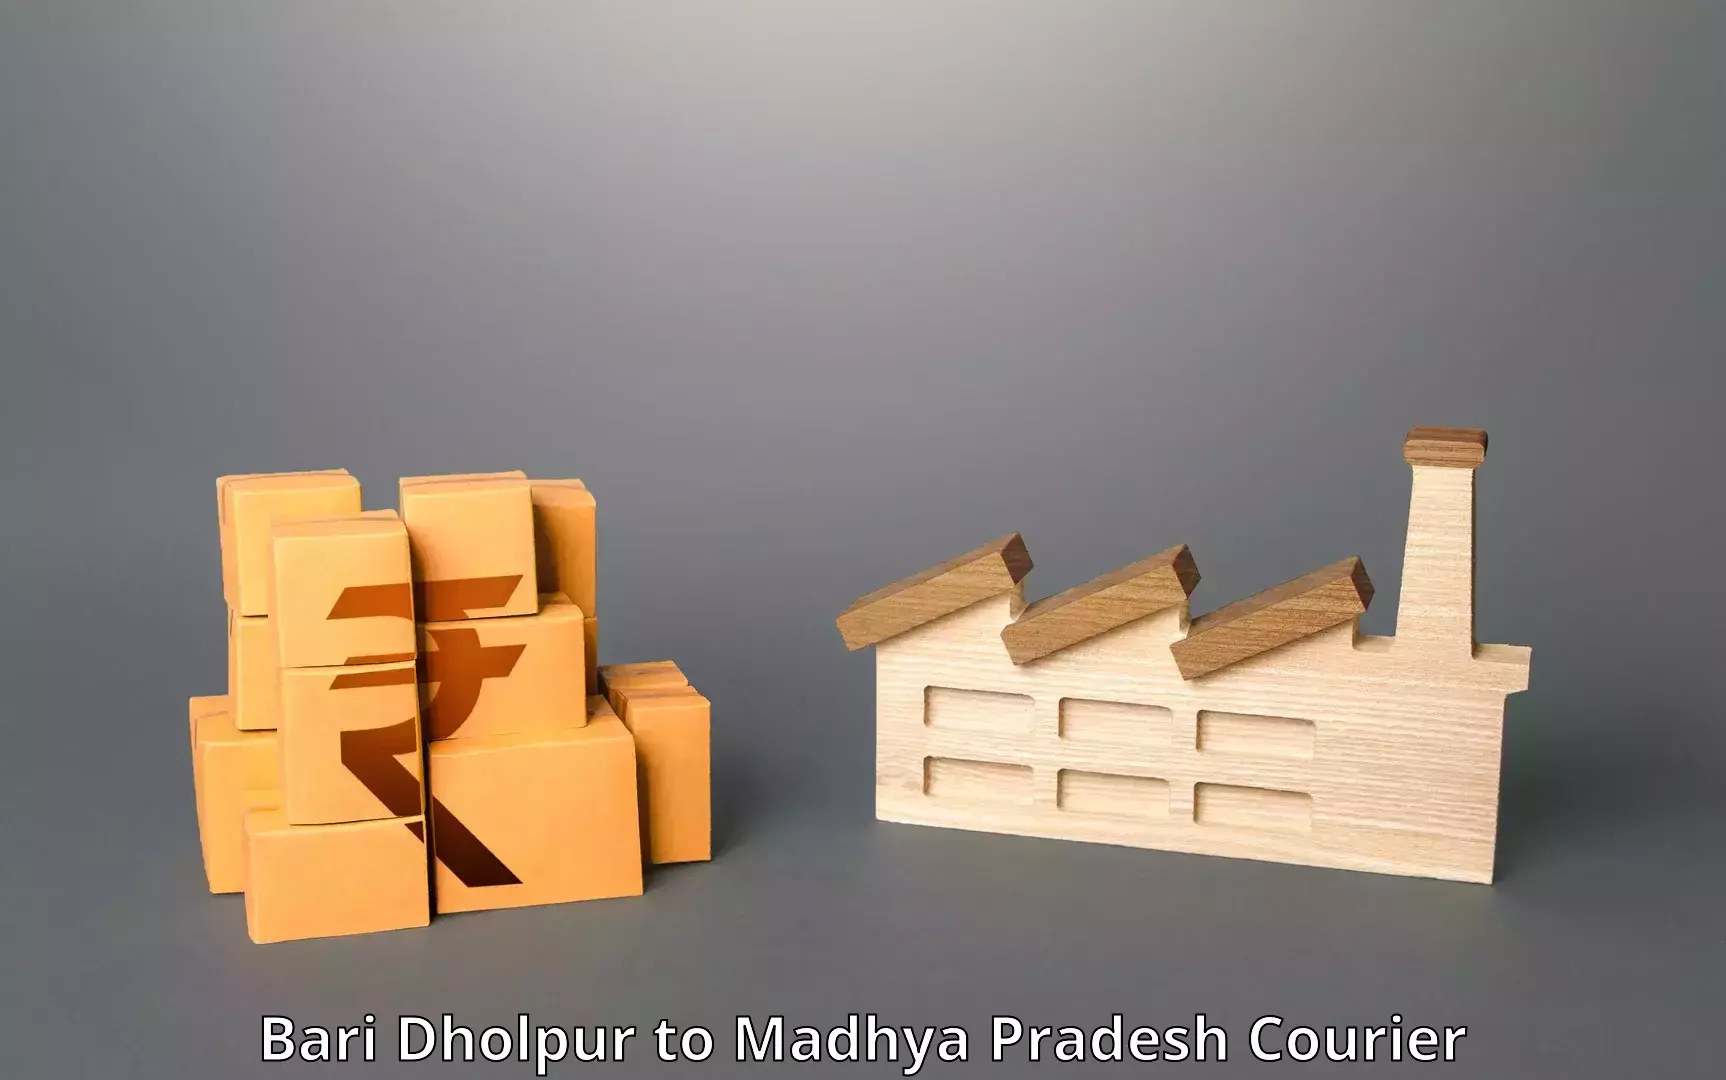 Versatile courier offerings Bari Dholpur to Dindori